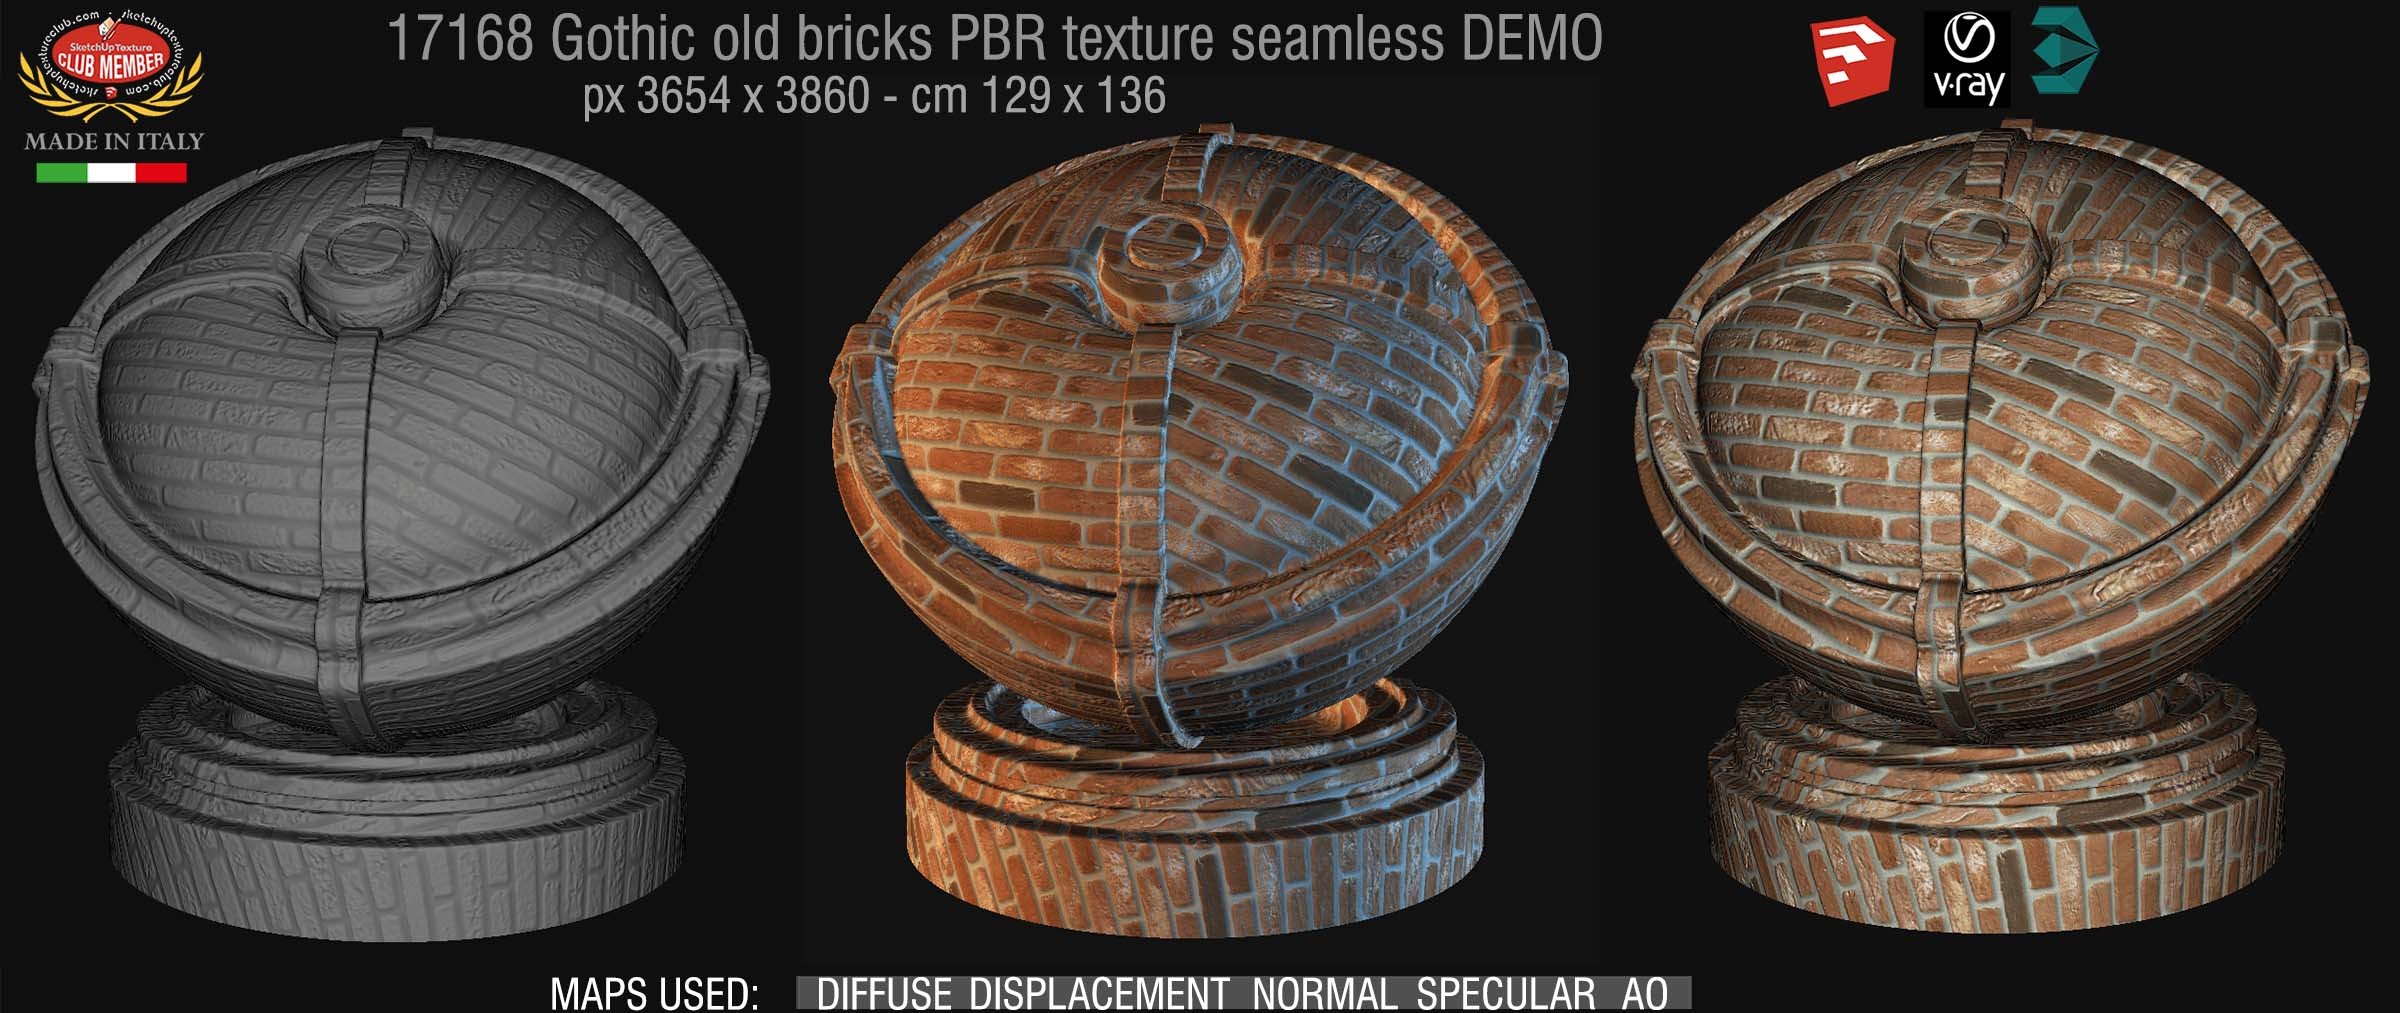 17168 Gothic old bricks PBR texture seamless DEMO